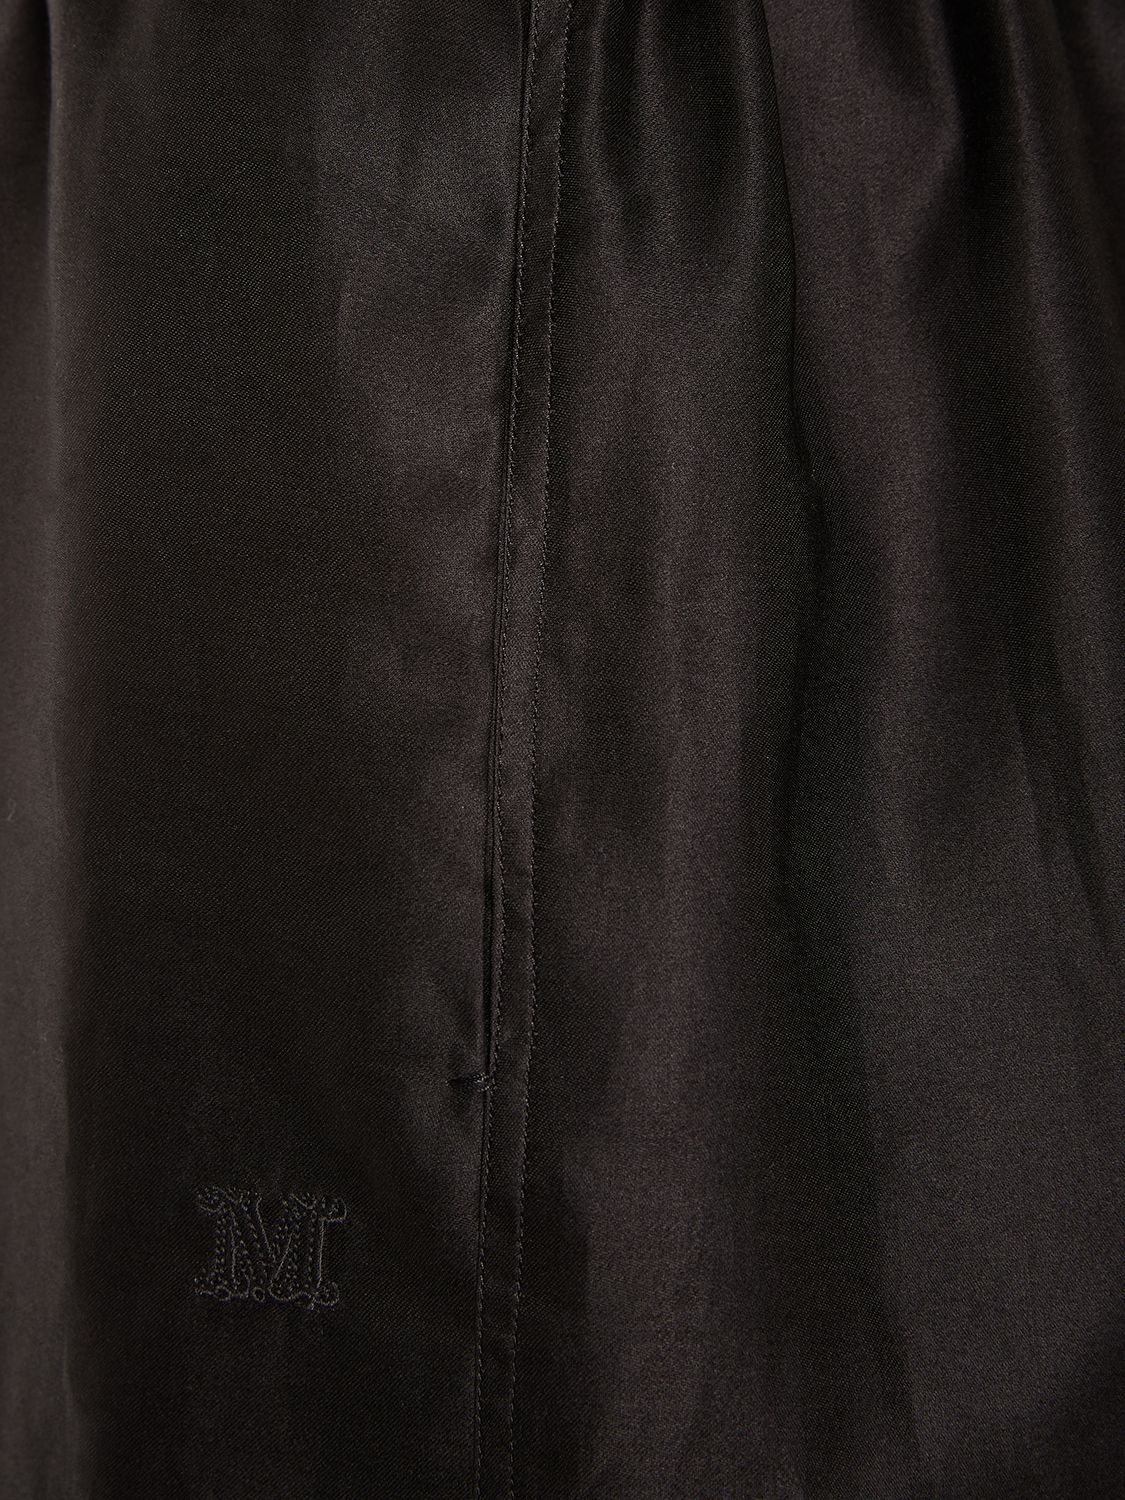 Shop Max Mara Piadena Cotton High Waist Shorts In Black